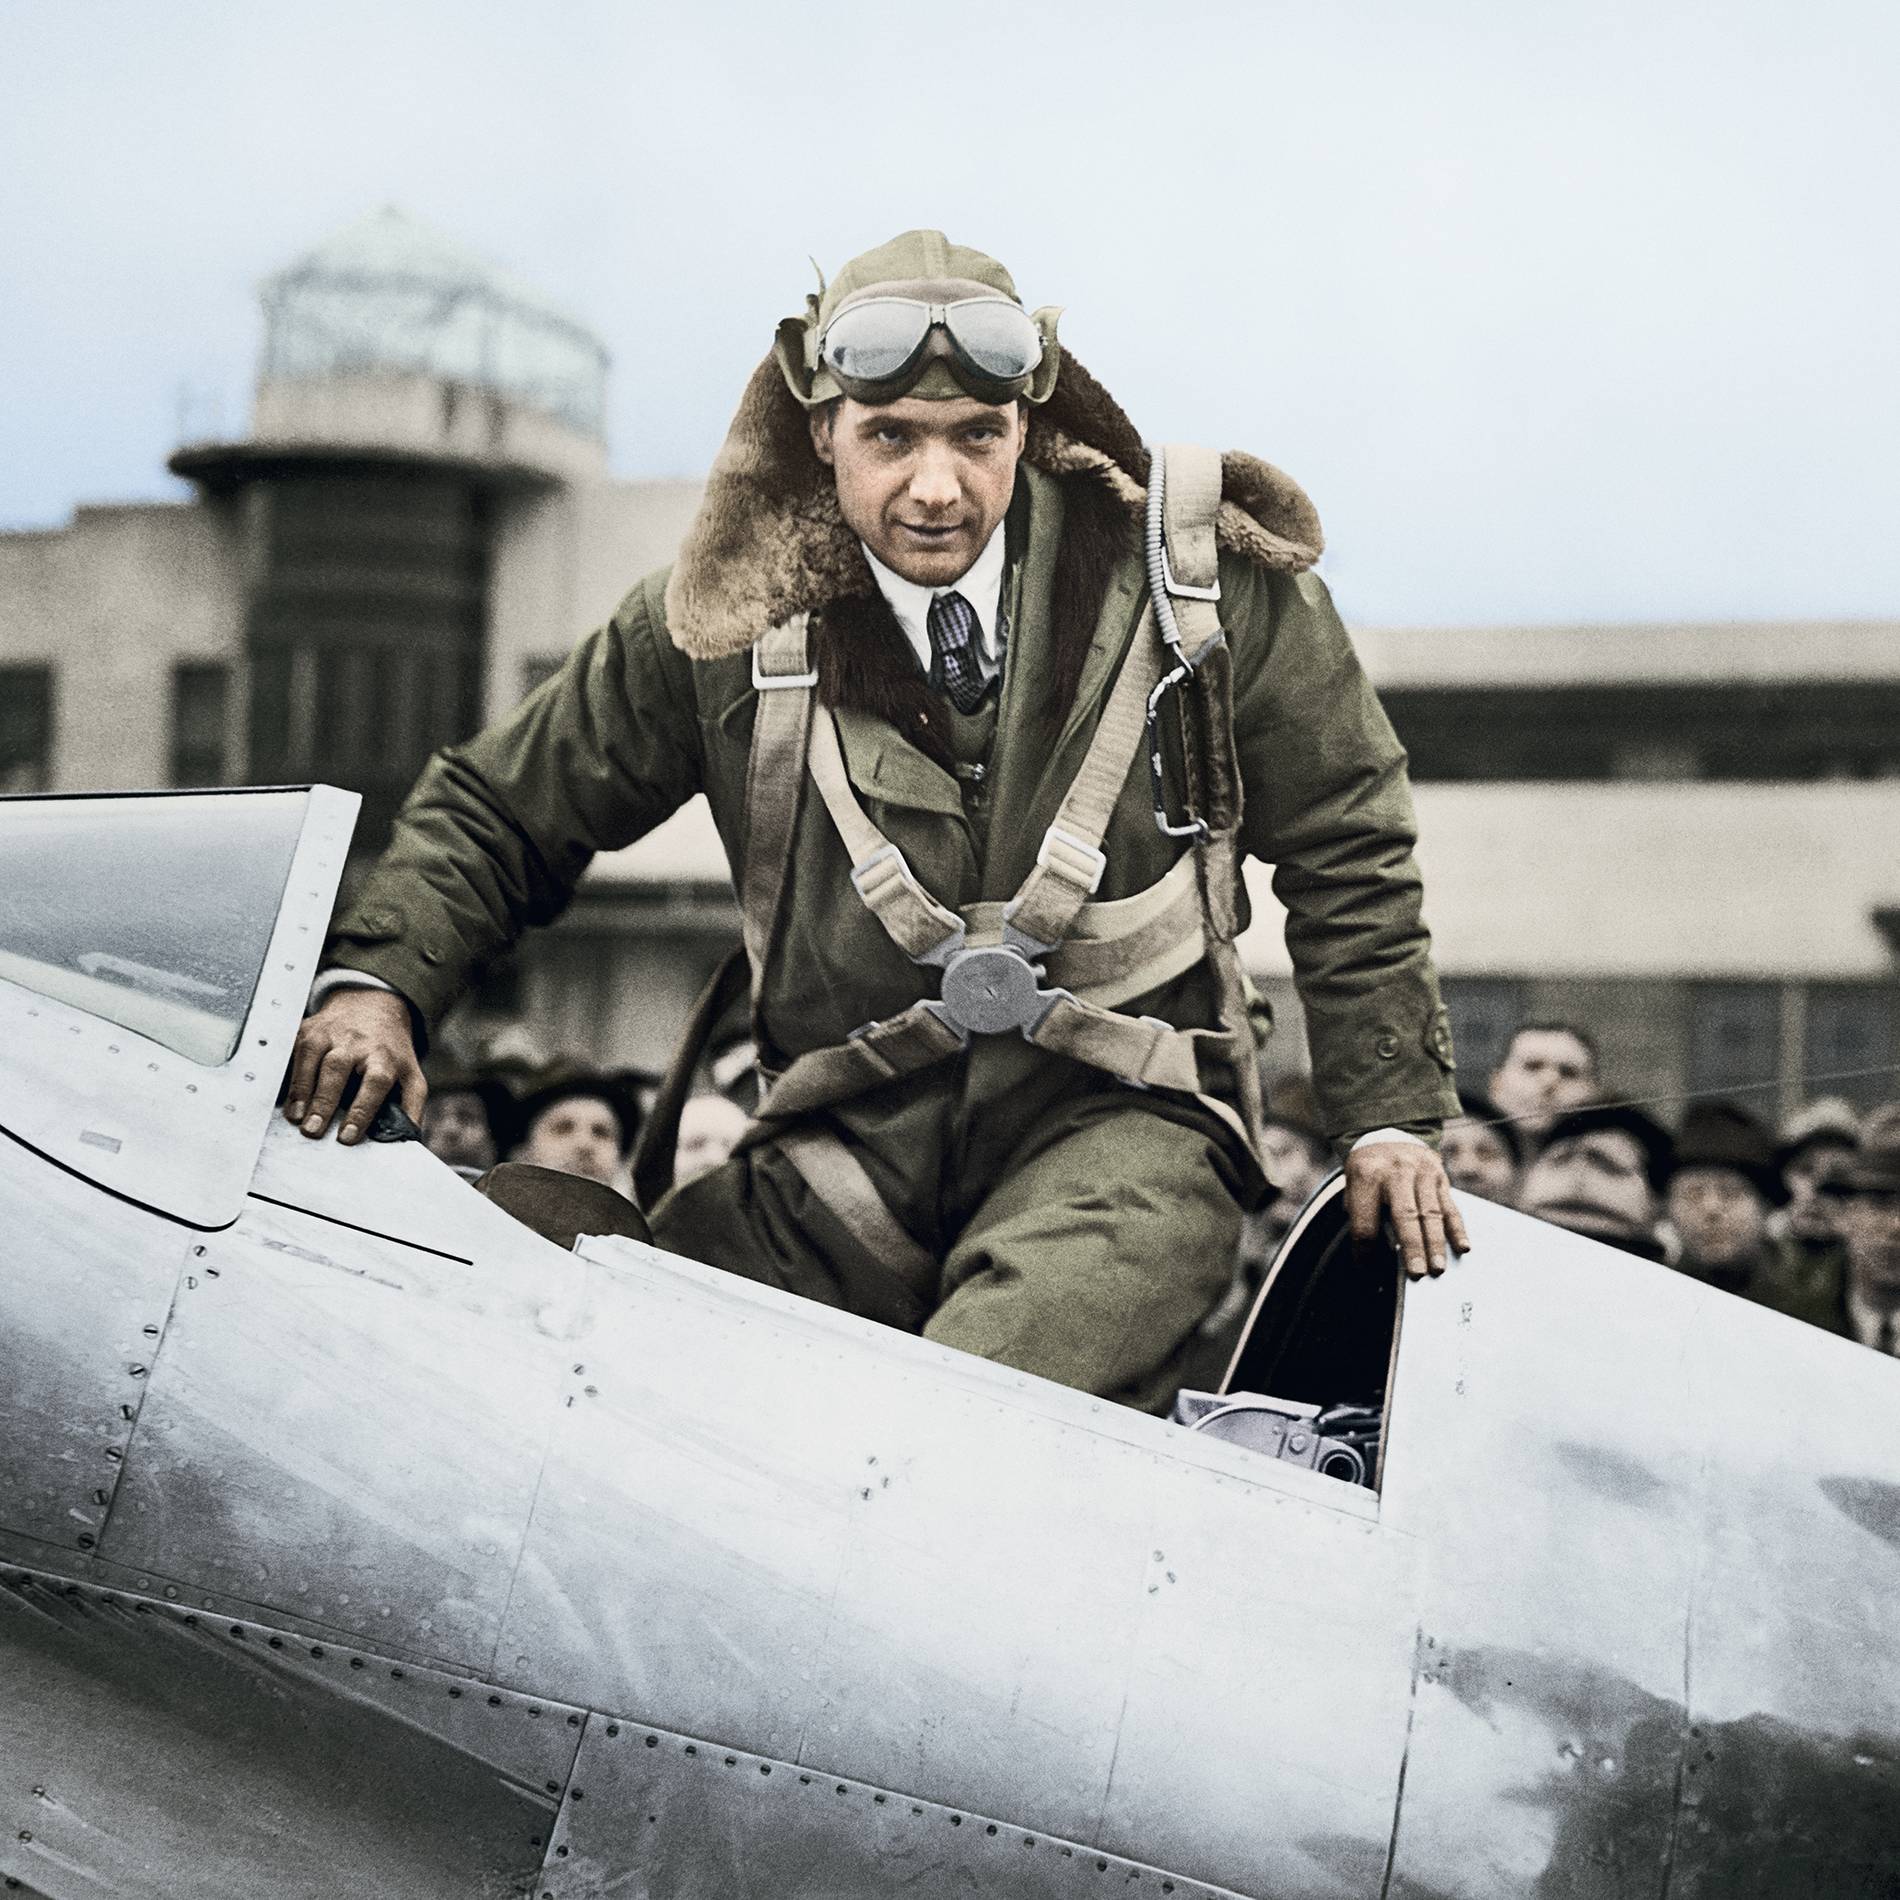 Aviation expert Howard Hughes